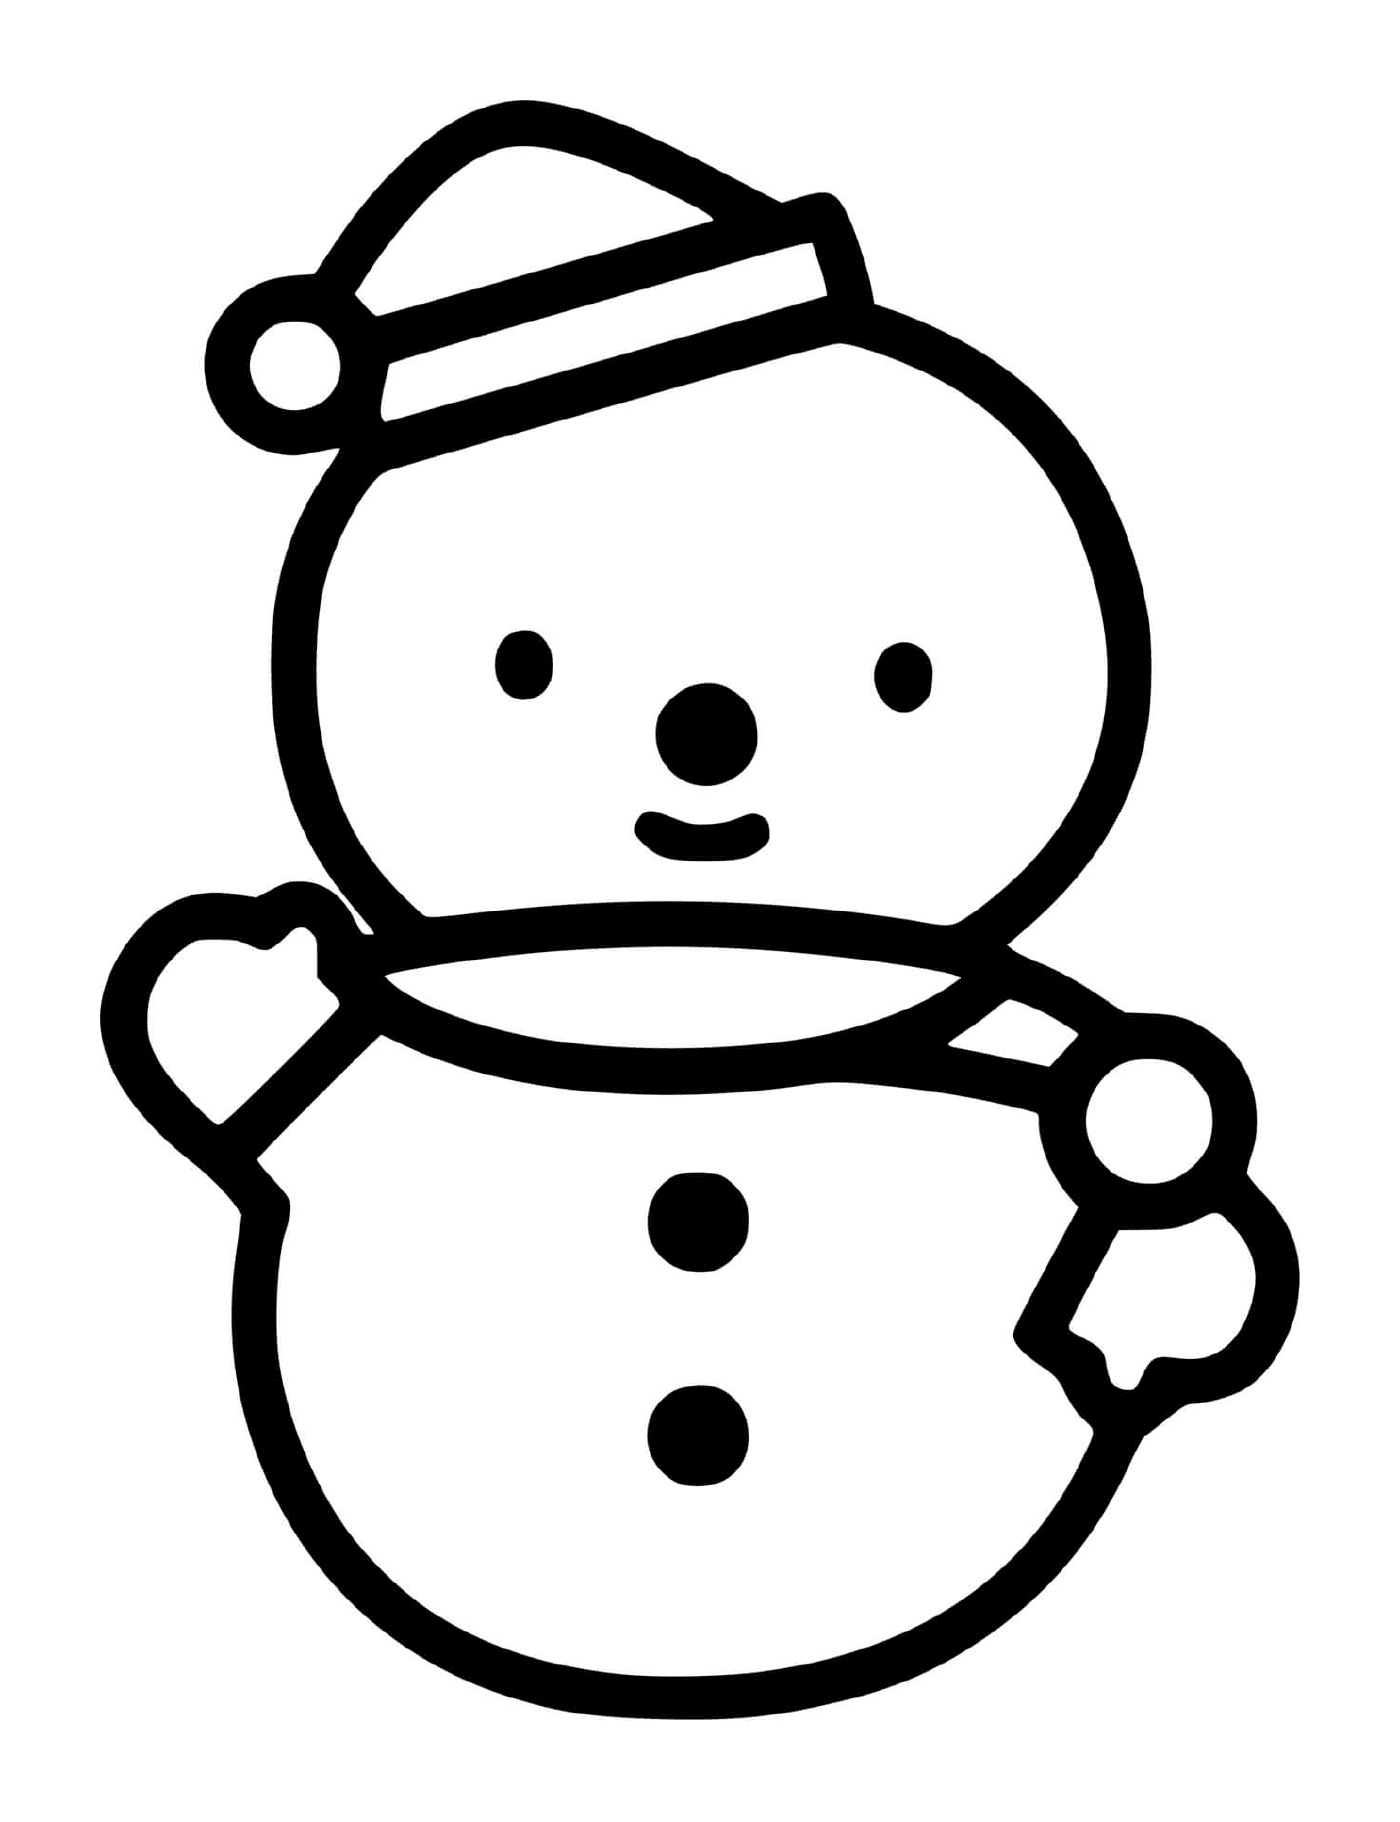  Um boneco de neve fácil de desenhar 